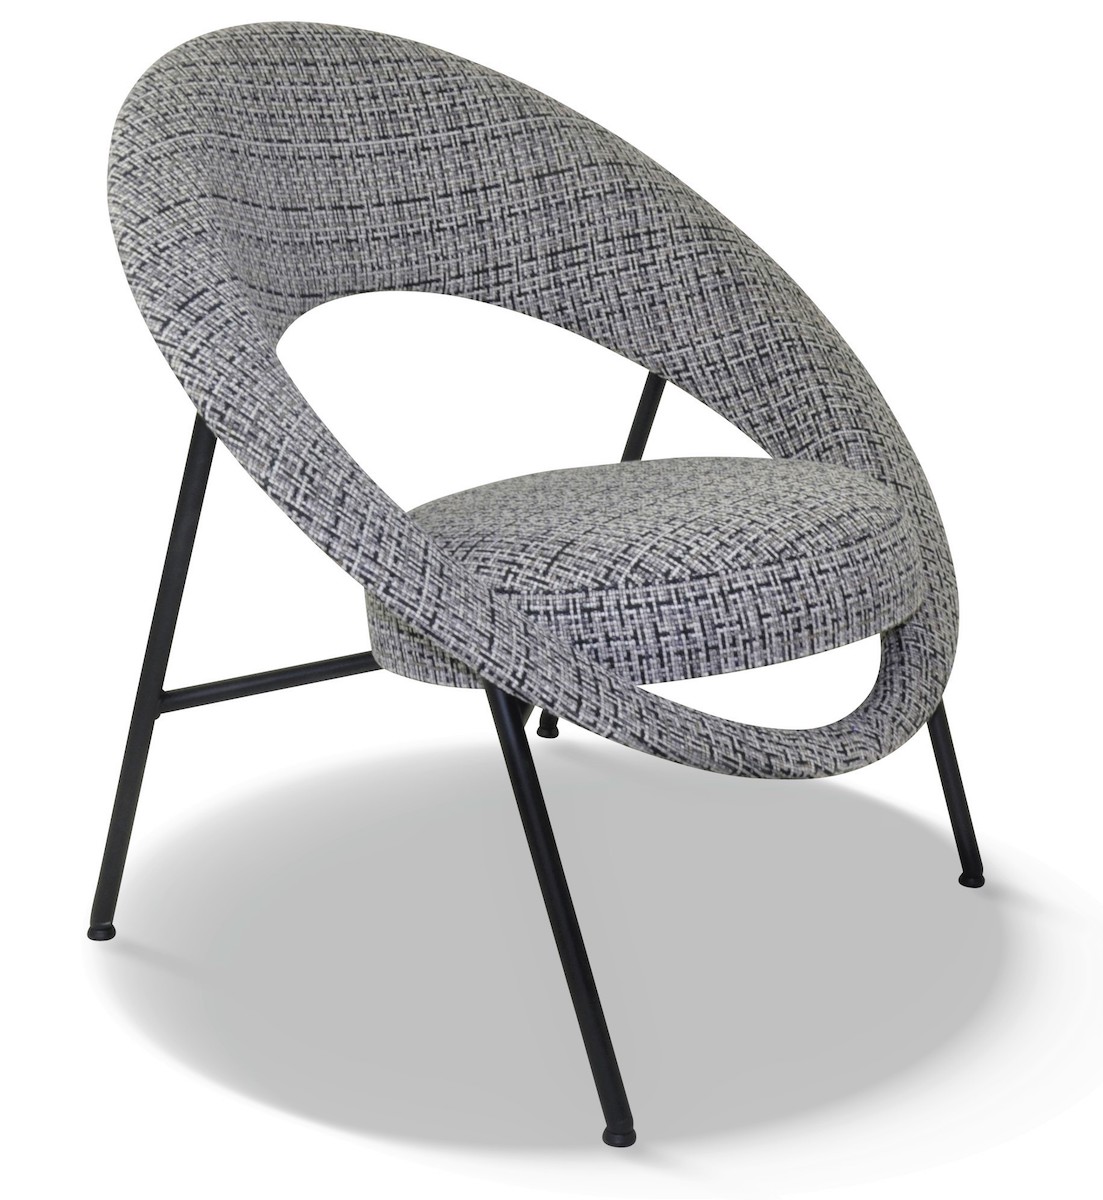 Dessiné en 1957 par le couple de designers français Geneviève Dangles et Christian Defrance, le fauteuil a marqué son époque. Véritable icône design son assise circulaire est entourée d’un dossier en forme d’anneau (d’où son nom qui fait référence à la planète). 